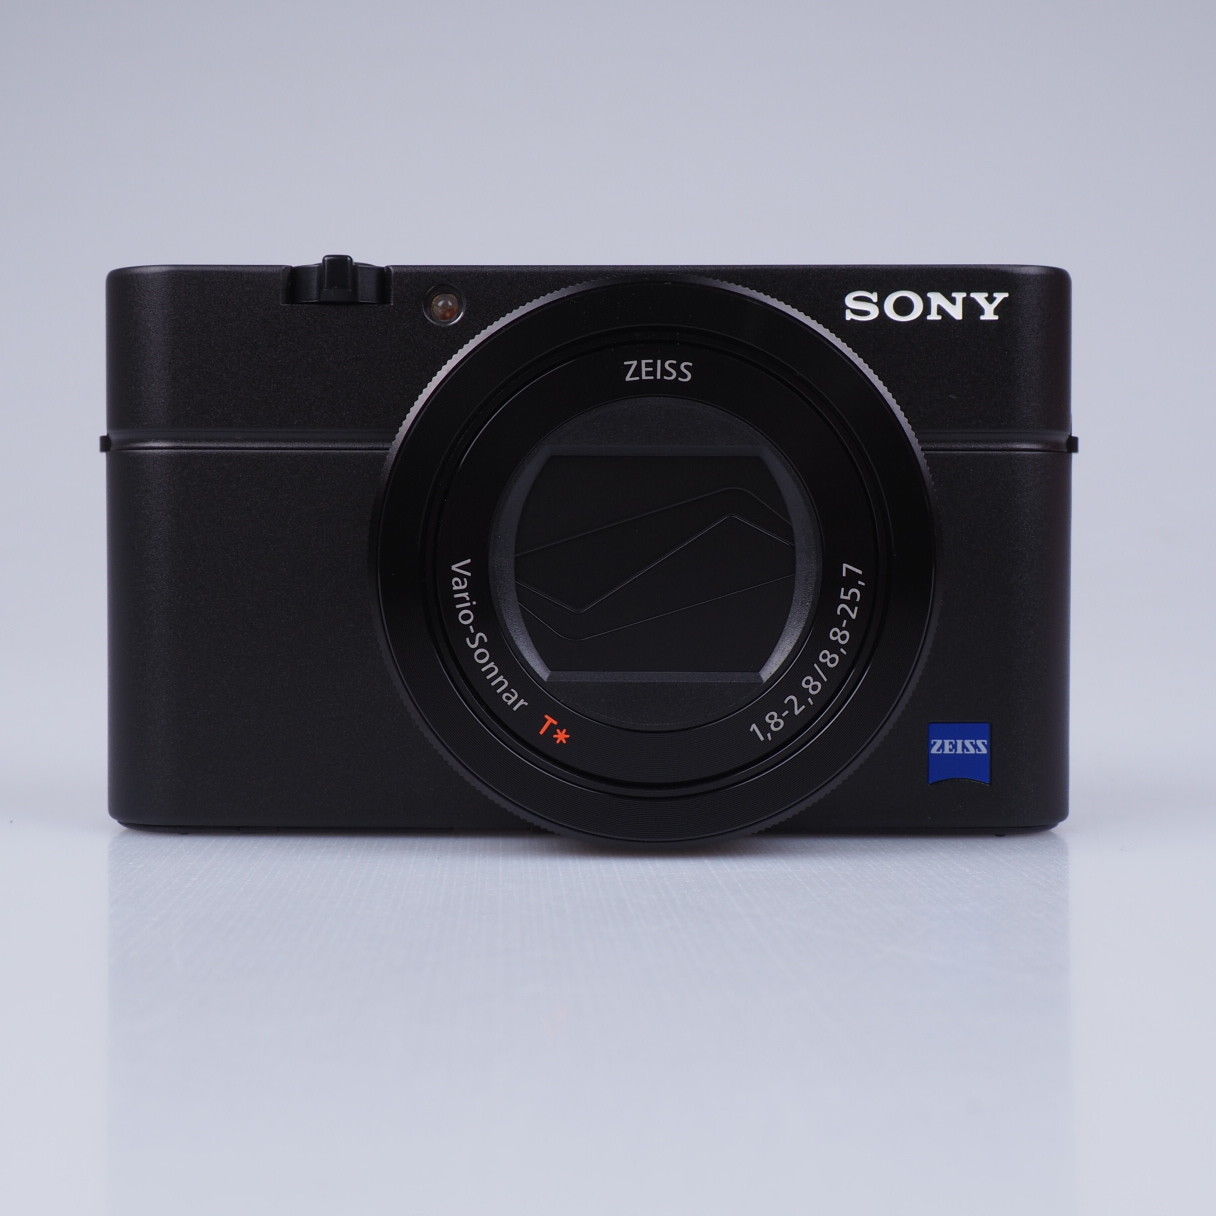 Sony Cyber-Shot DSC-RX100III